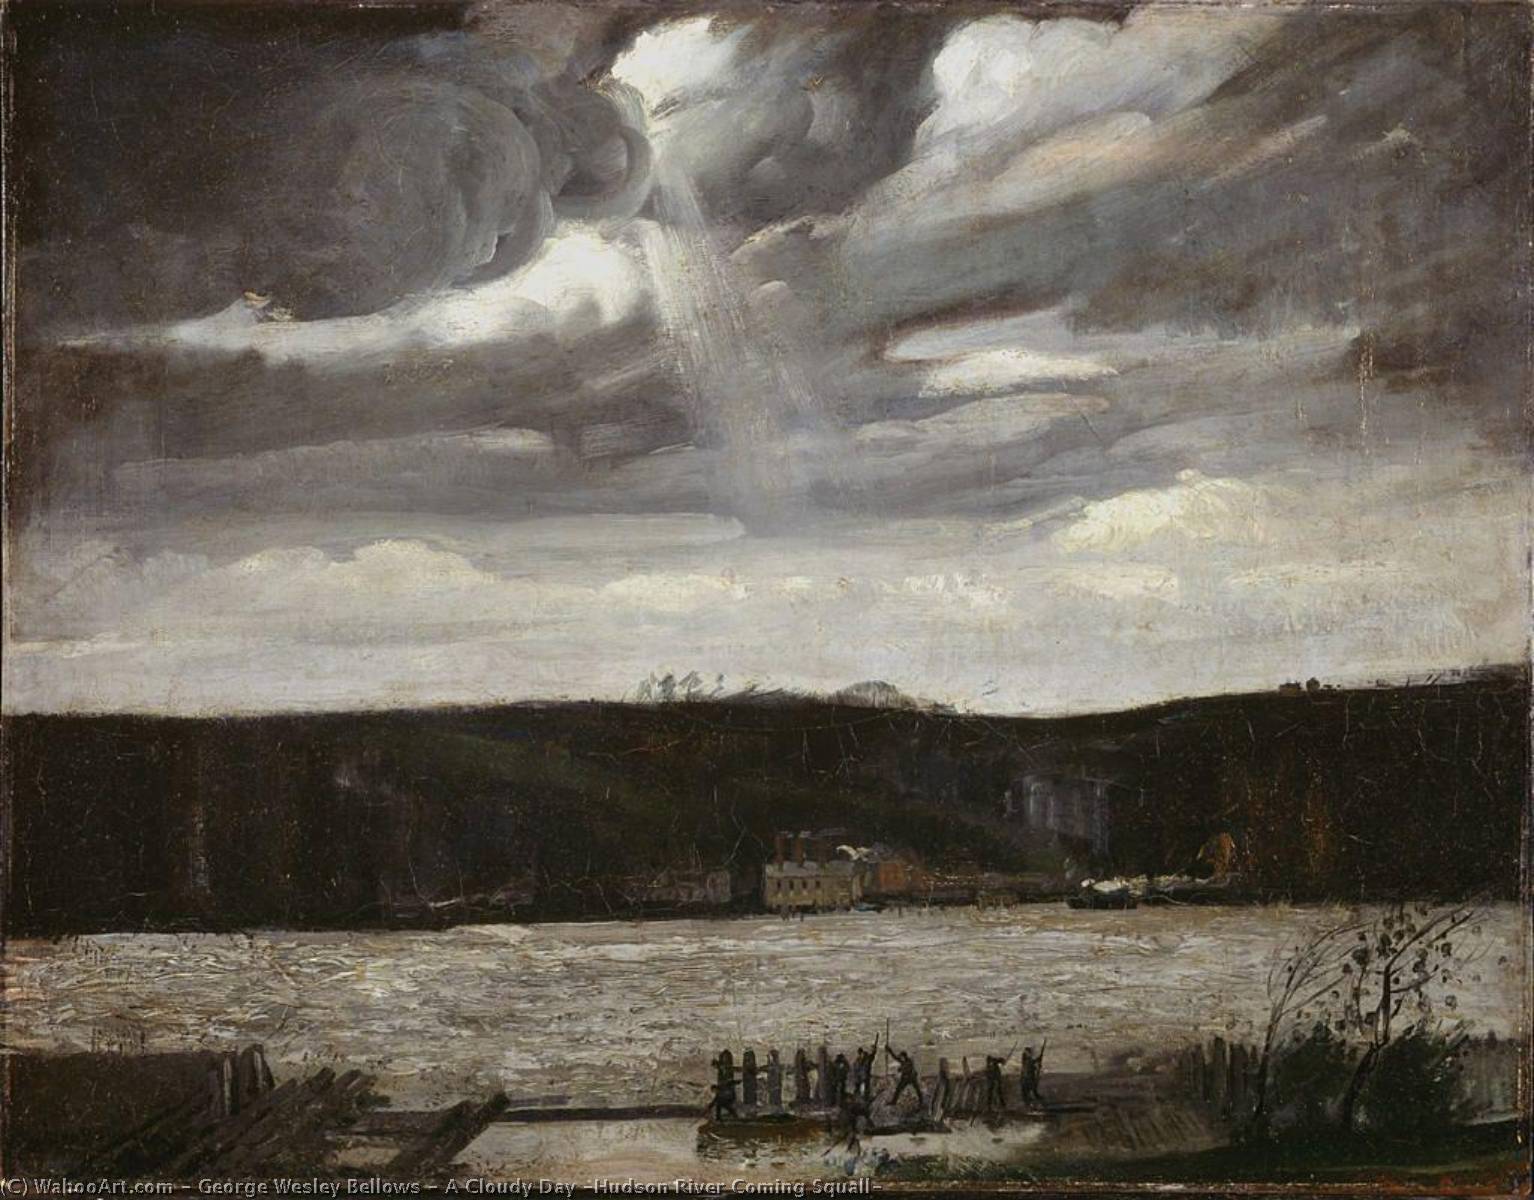 Wikioo.org – La Enciclopedia de las Bellas Artes - Pintura, Obras de arte de George Wesley Bellows - Un nublado  Día  Río Hudson  que viene  chubasco